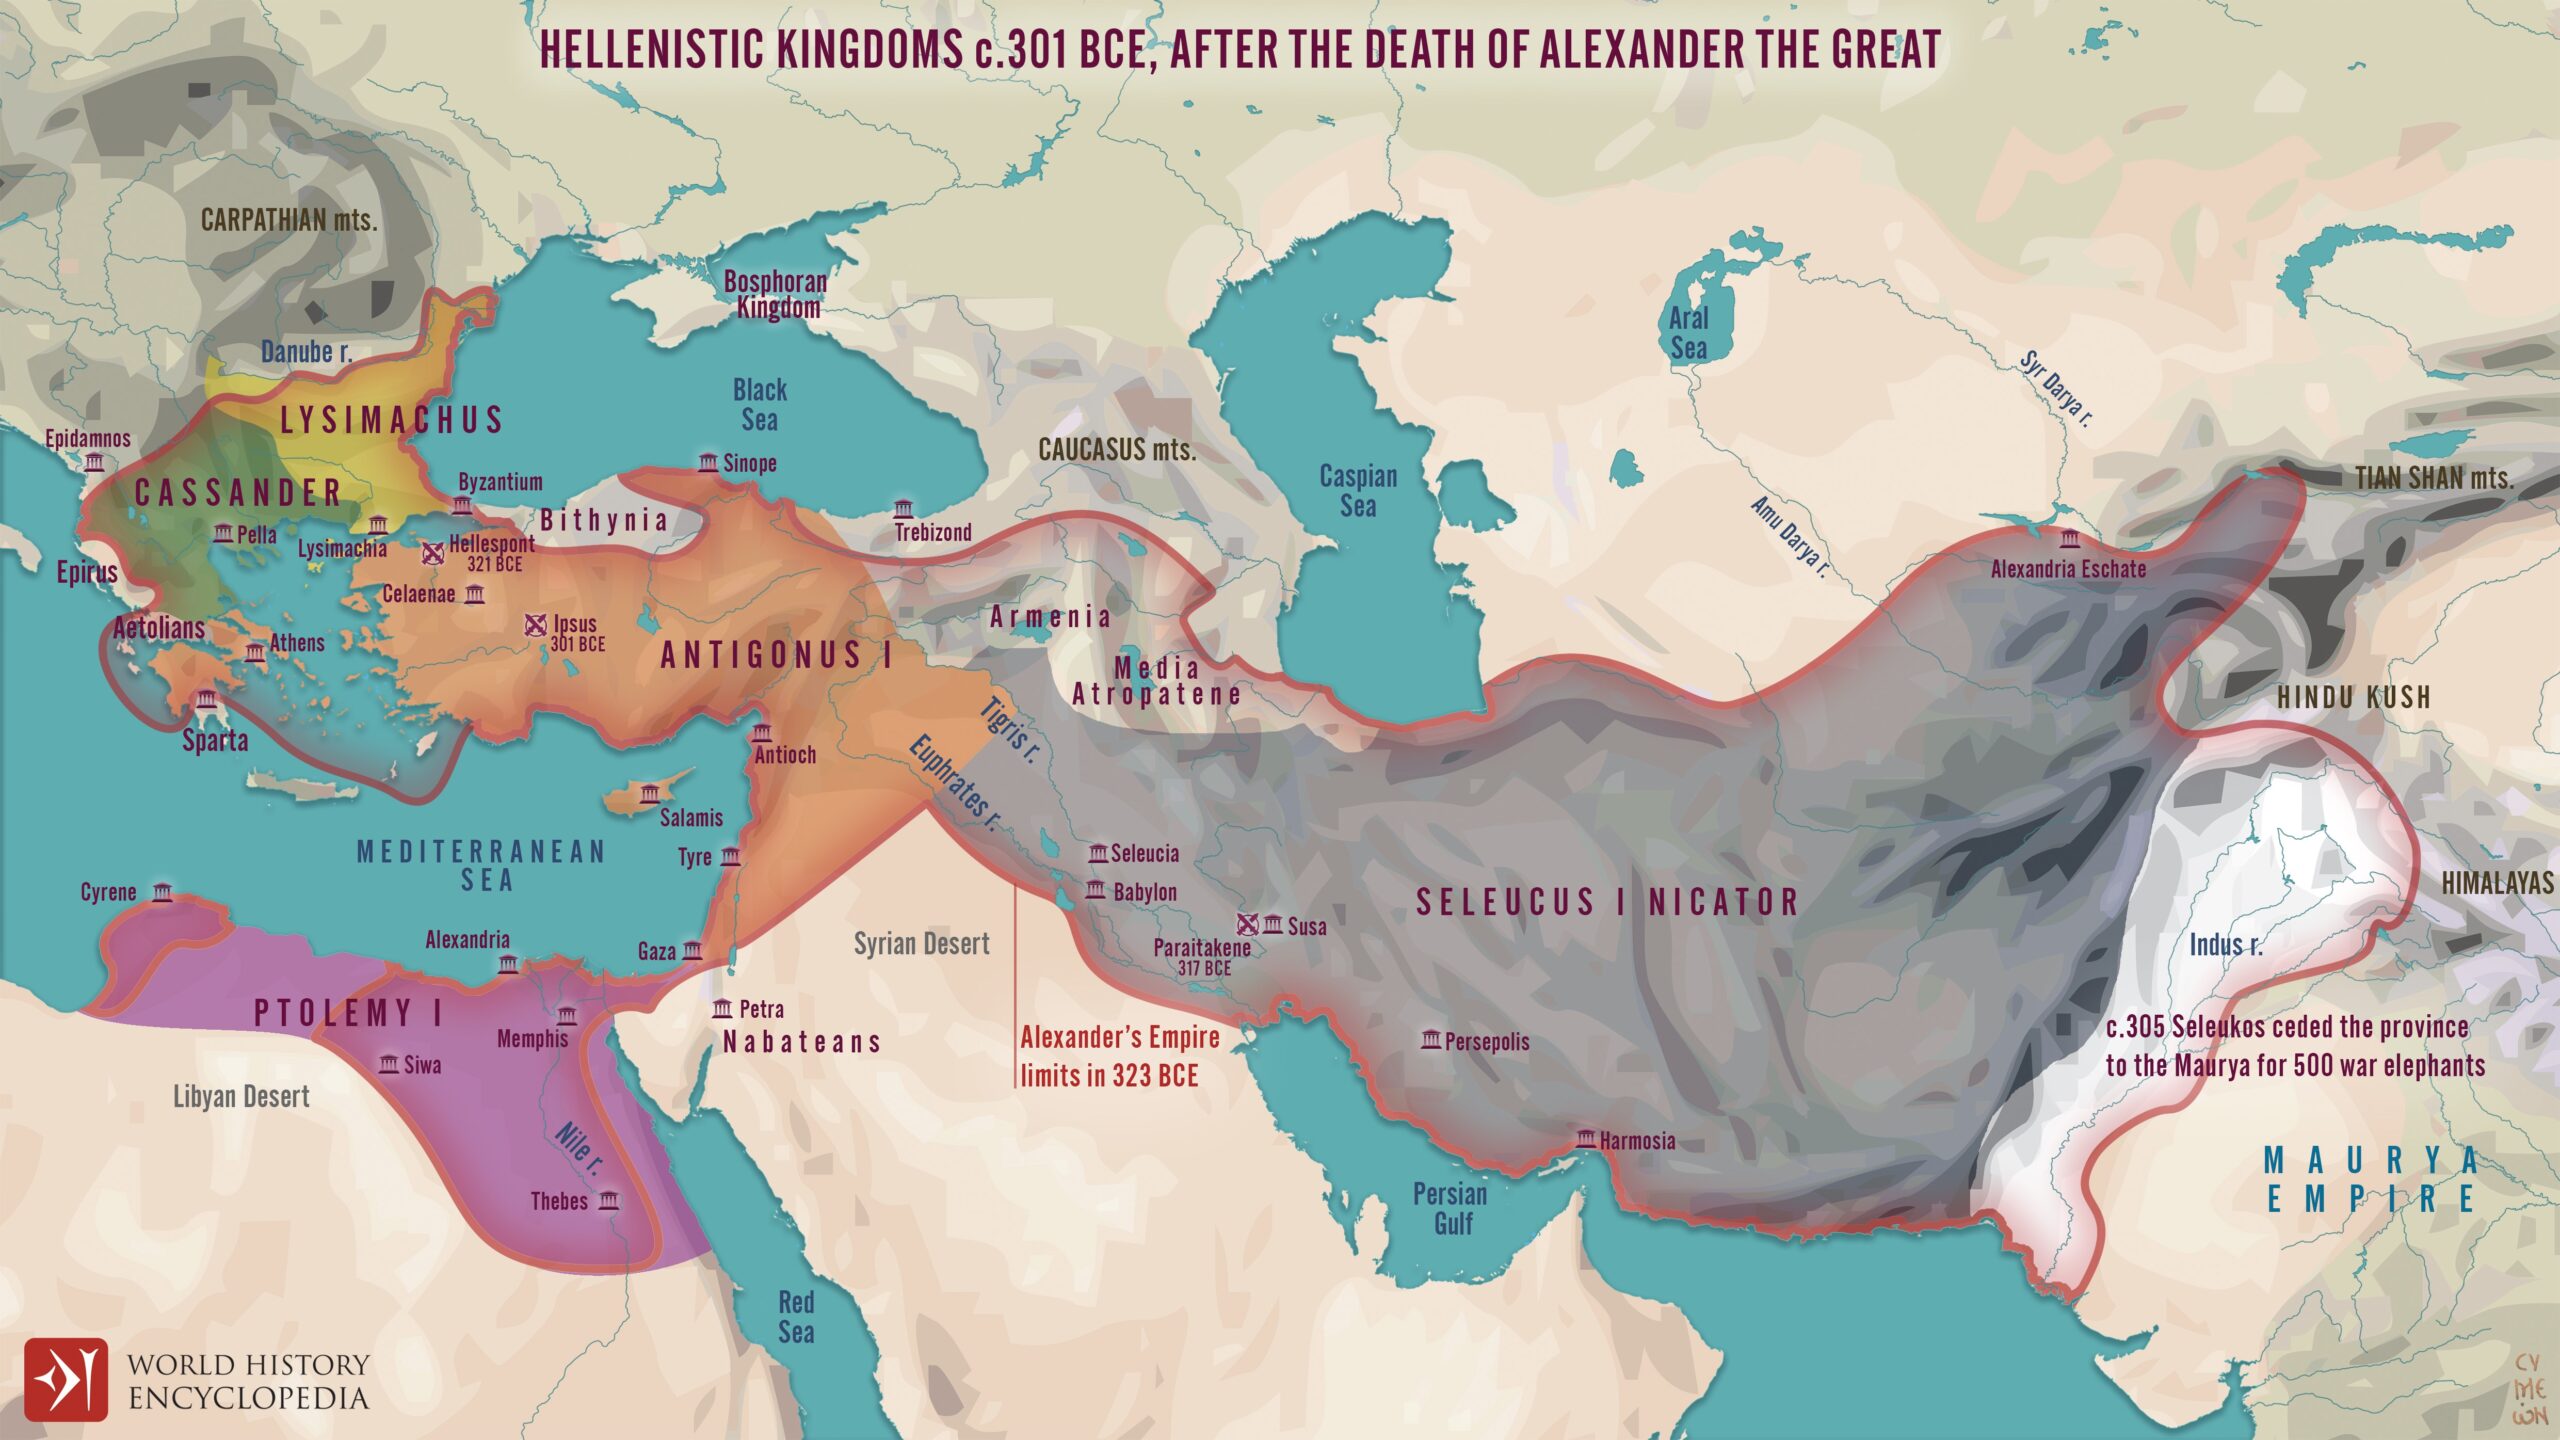 Los reinos helenísticos de los diádocos (300 a.C.)